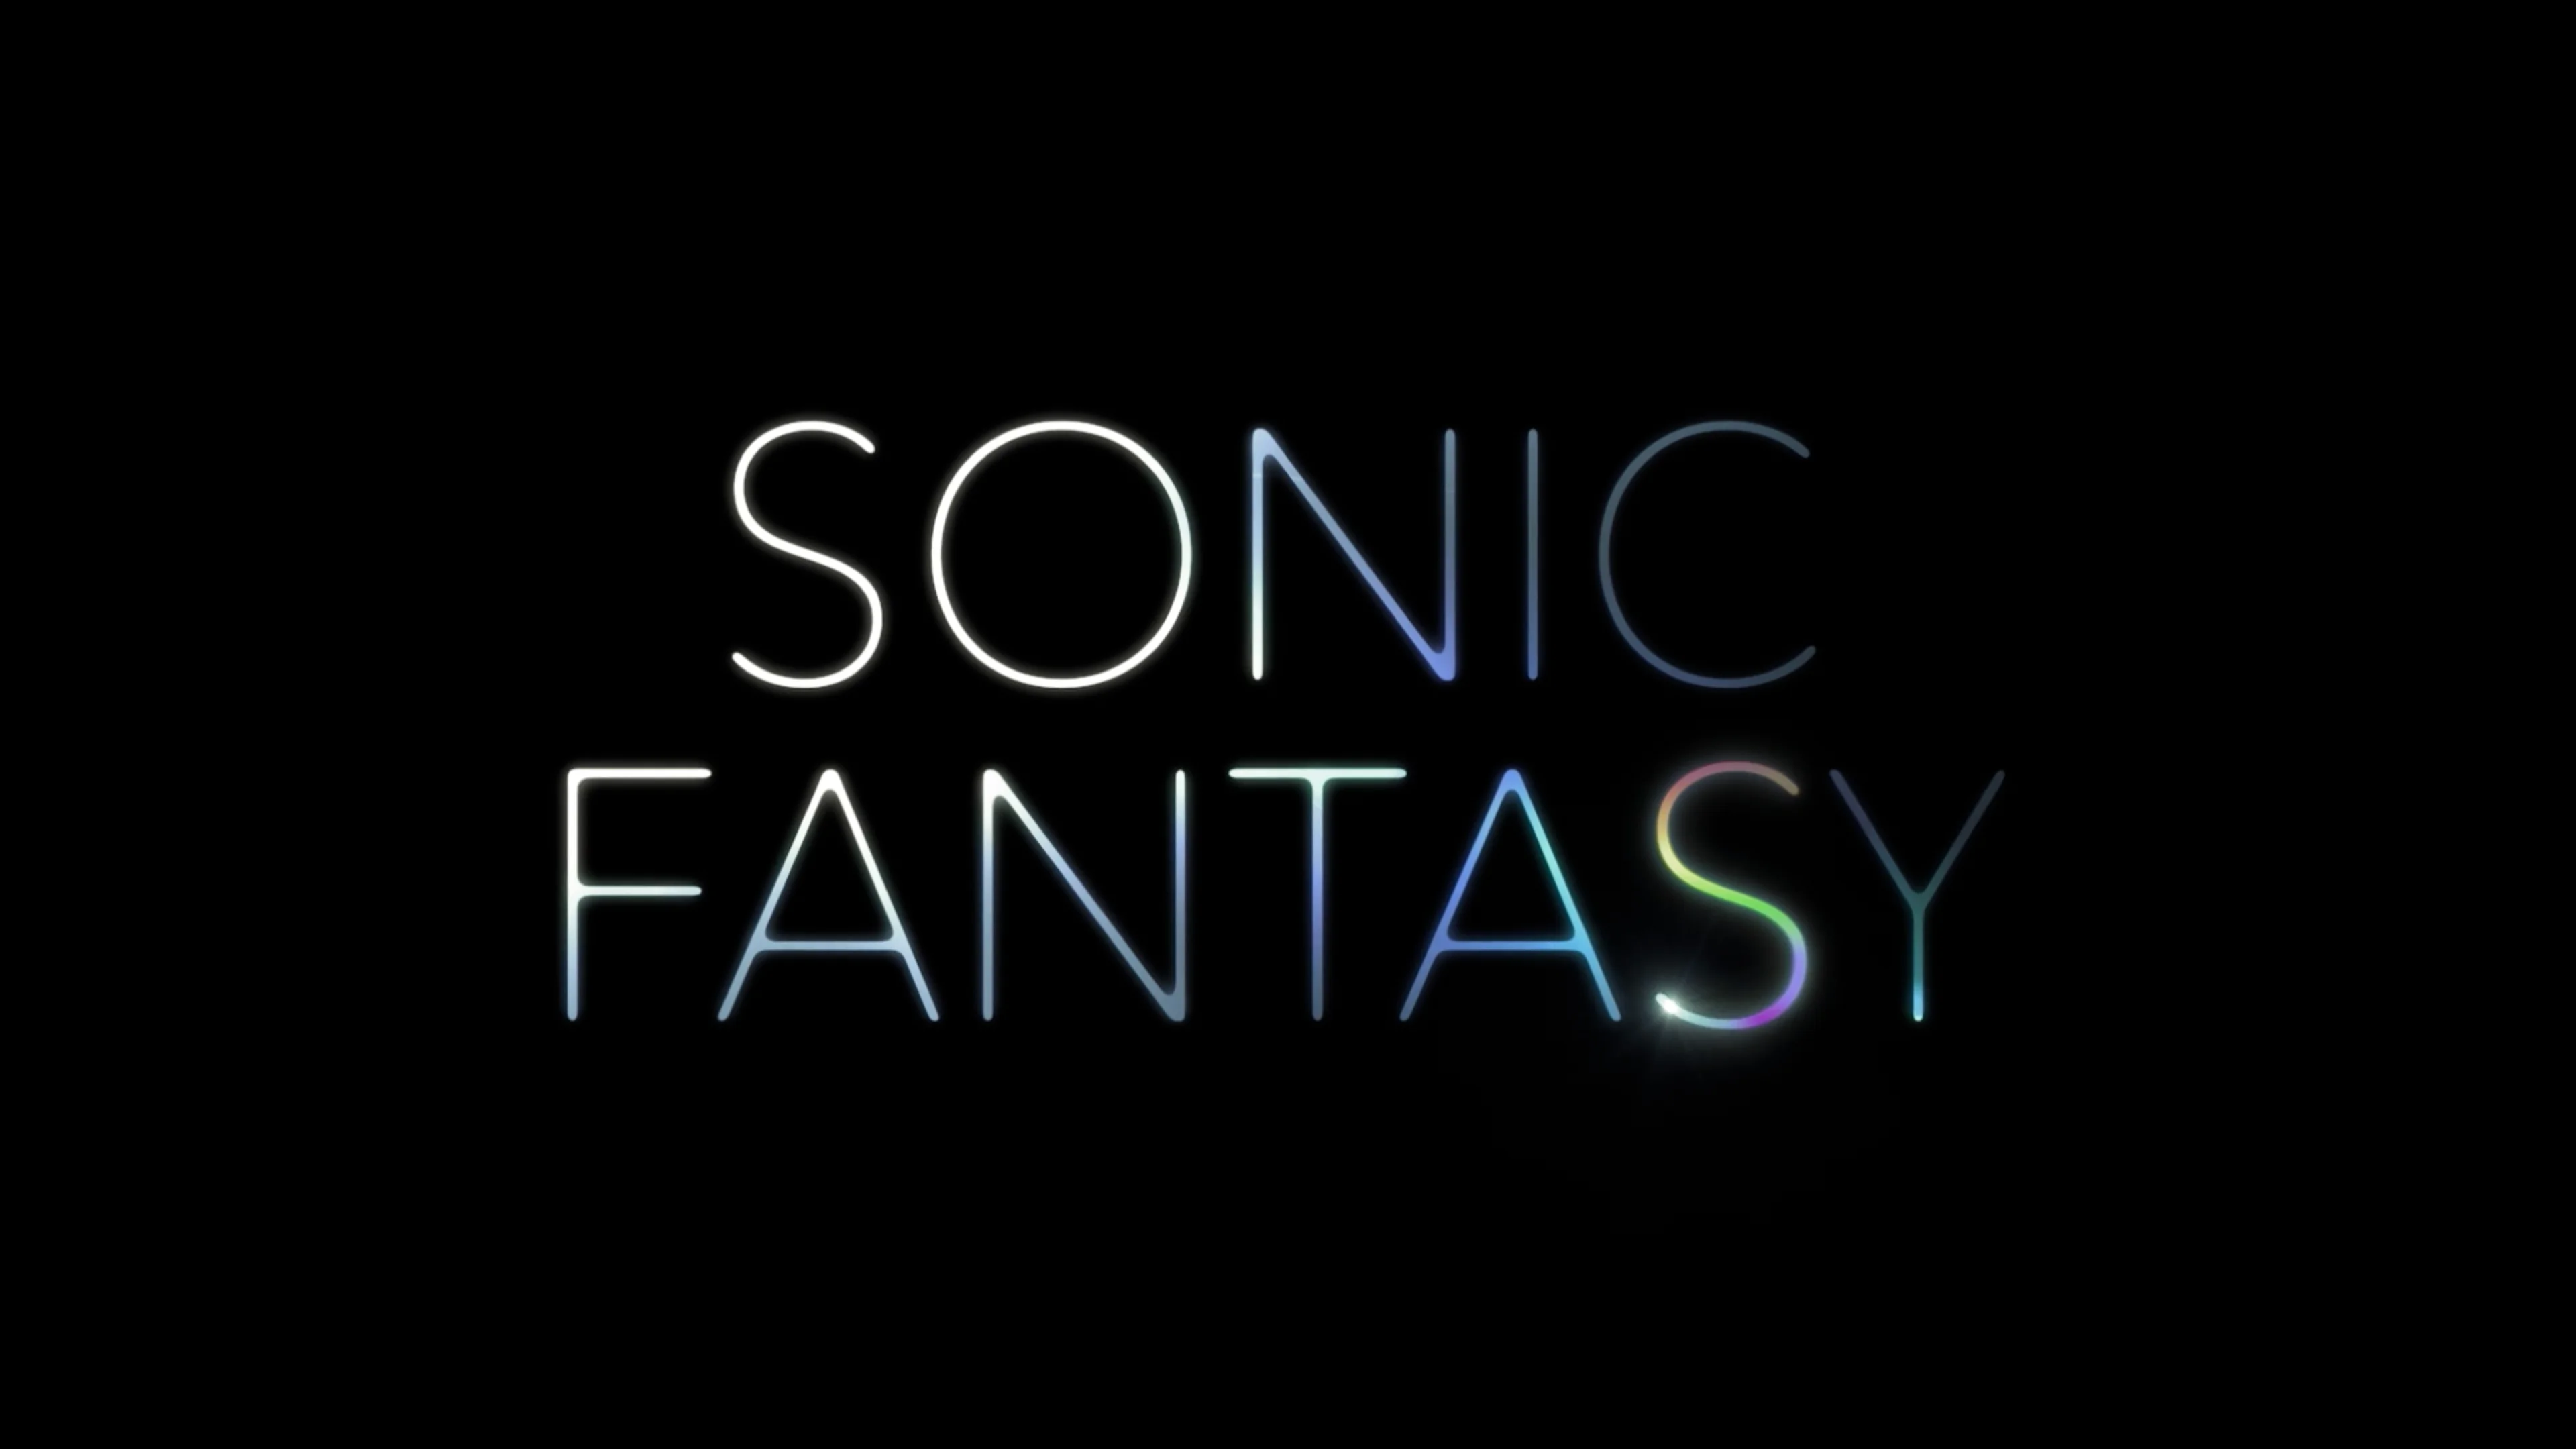 Sonic: empresa lança fantasia inspirada no live-action bizarro